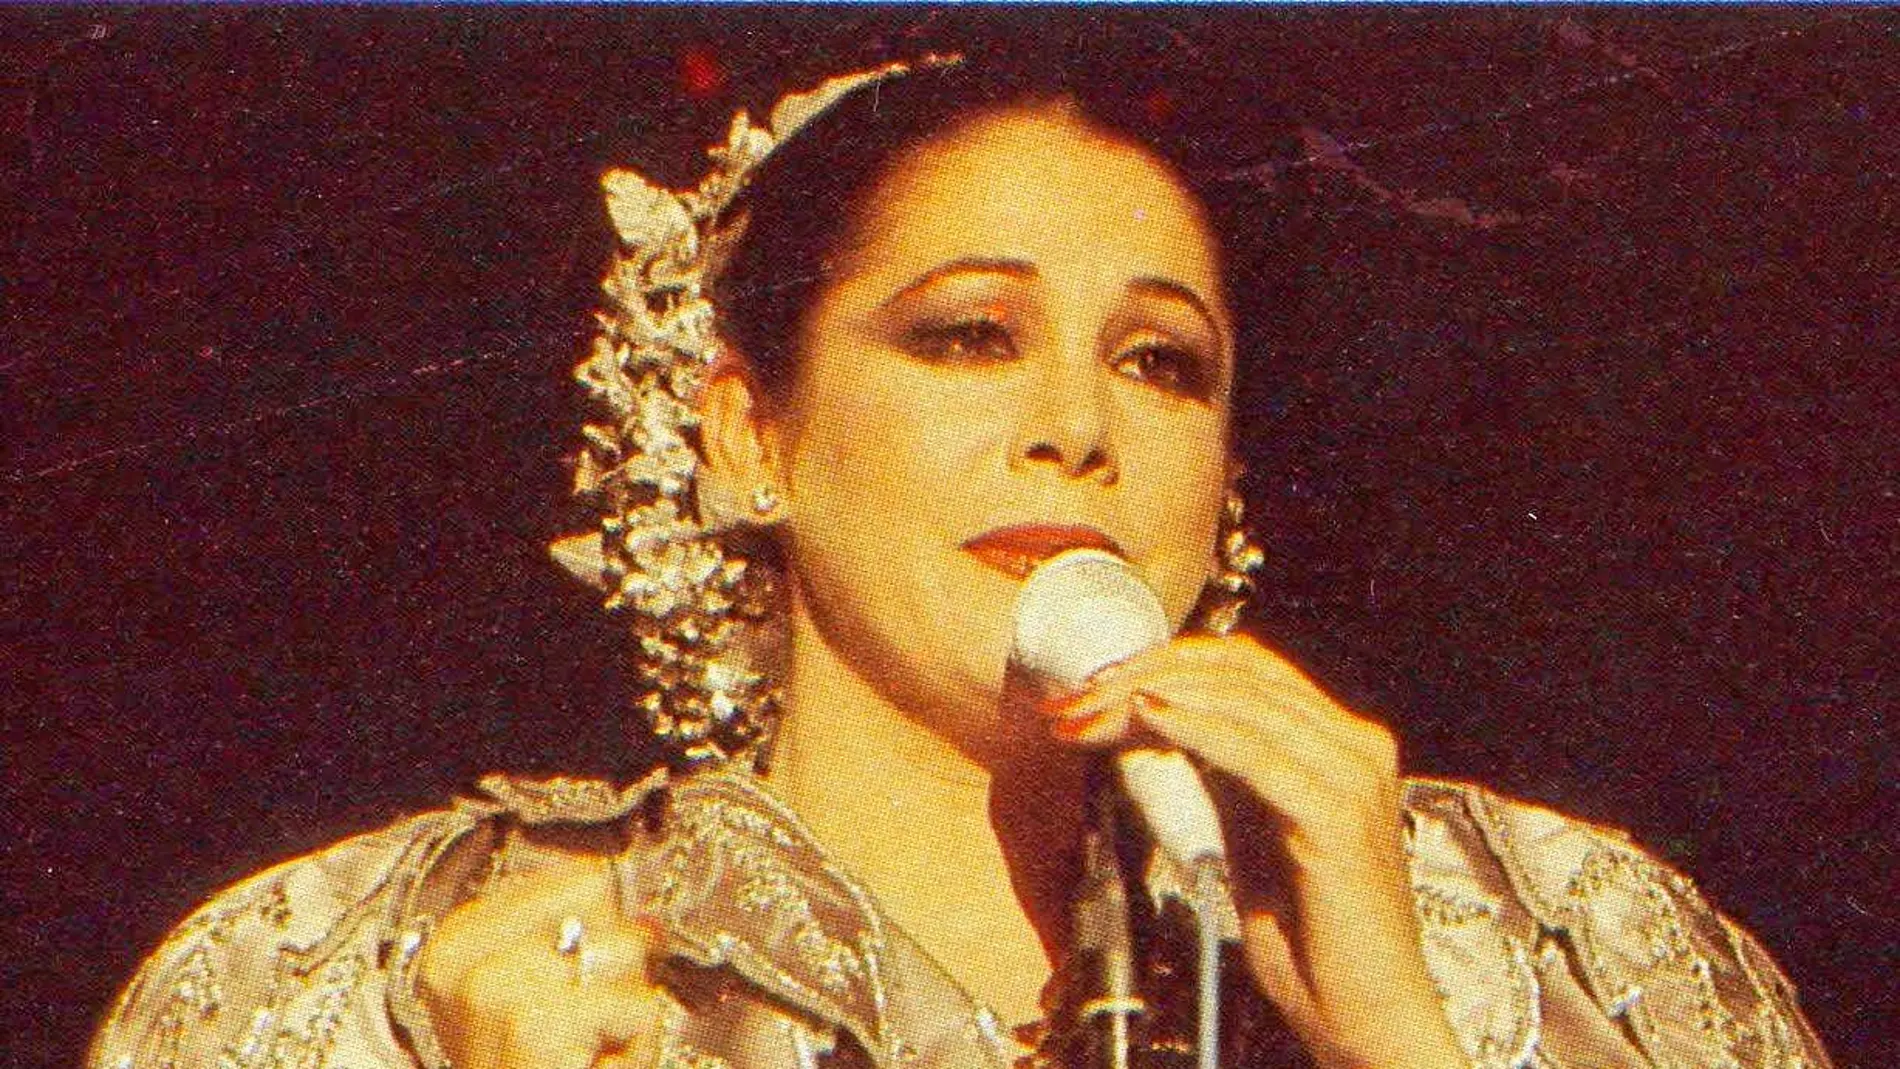 La artista ofreció en diciembre de 1985 un concierto a beneficio de la Fundación Reina Sofía (al que pertenece esta imagen); al terminar la soberana acudió al camerino a saludarla